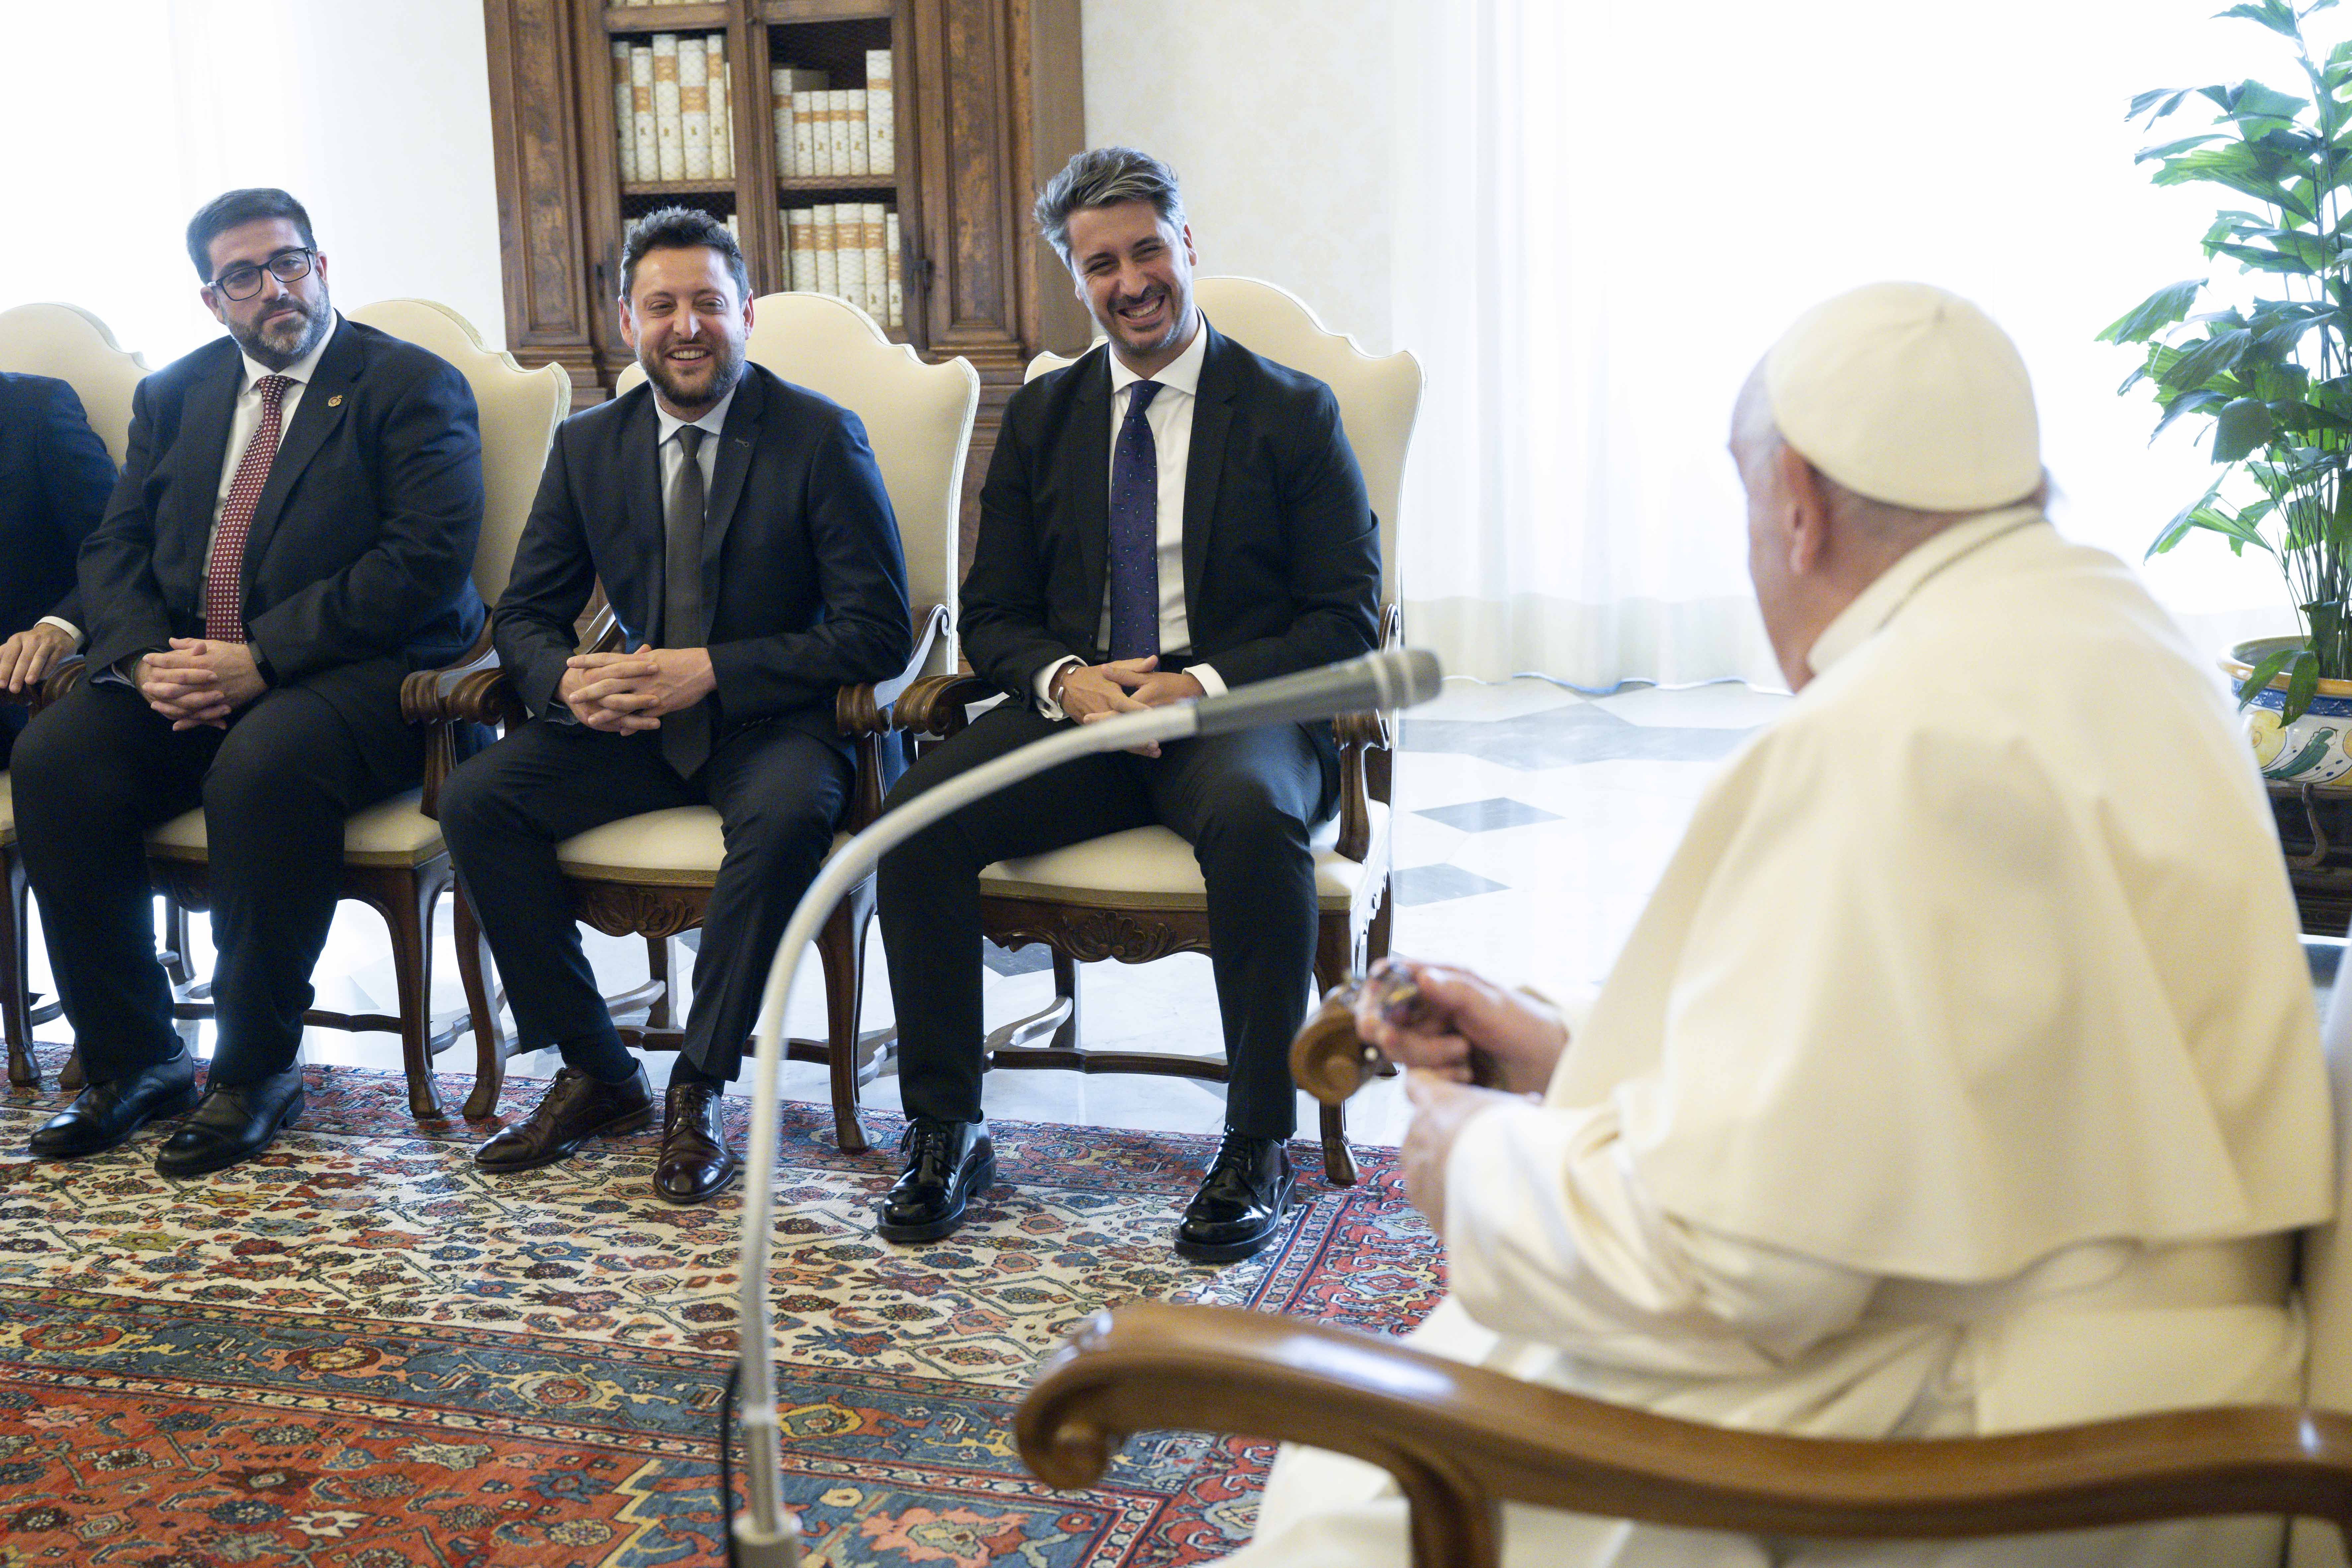 El Papa Francisco recibe a la delegación de las Ciudades Patrimonio